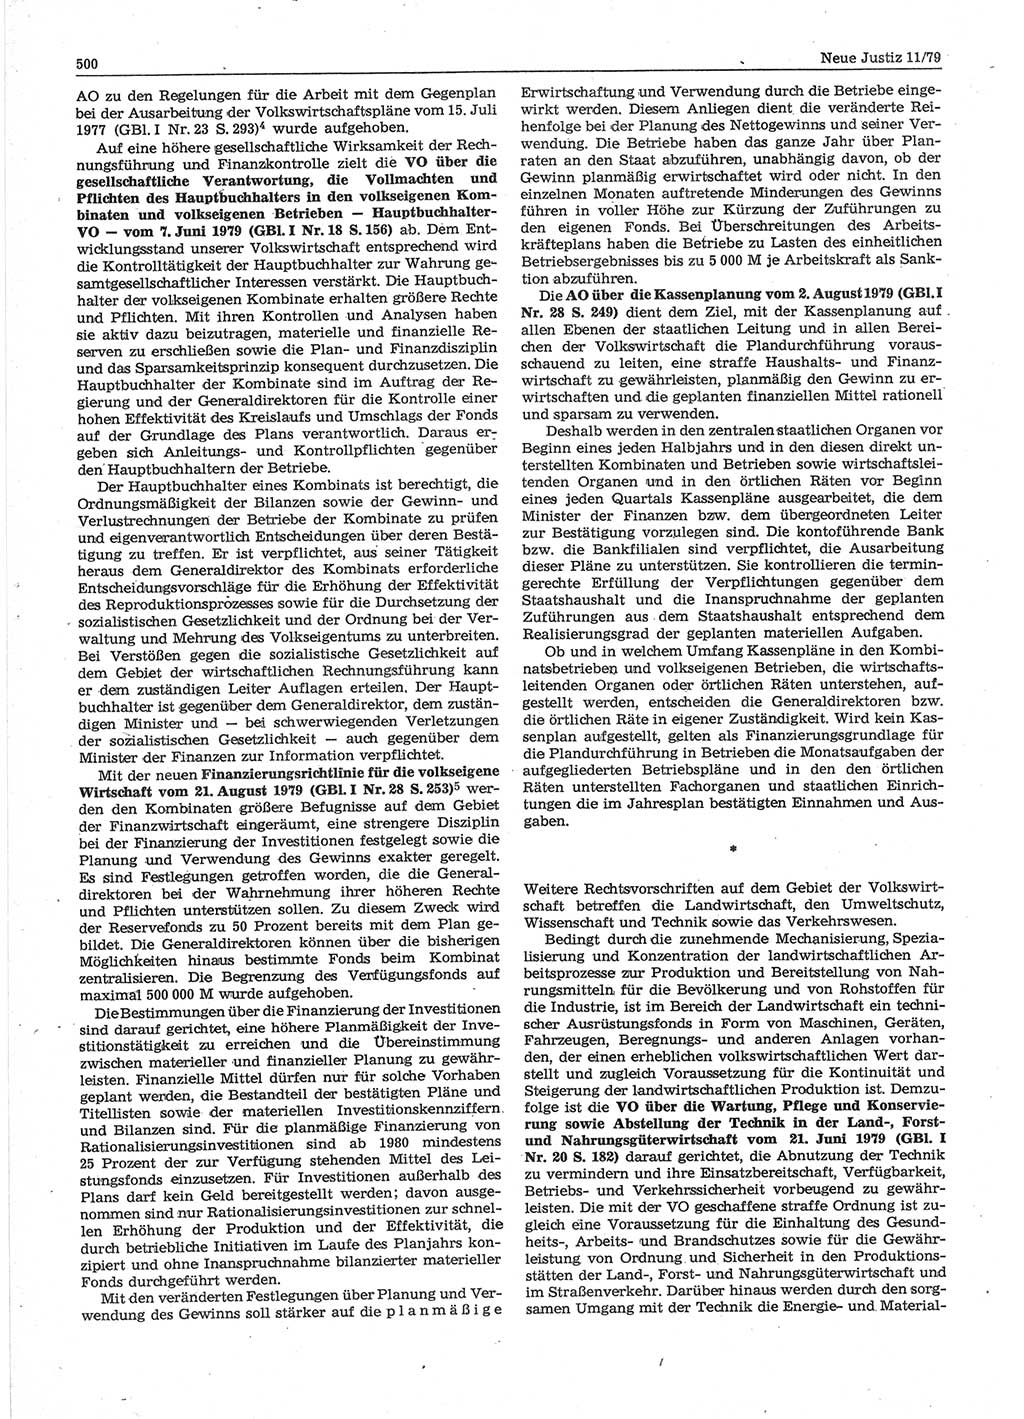 Neue Justiz (NJ), Zeitschrift für sozialistisches Recht und Gesetzlichkeit [Deutsche Demokratische Republik (DDR)], 33. Jahrgang 1979, Seite 500 (NJ DDR 1979, S. 500)